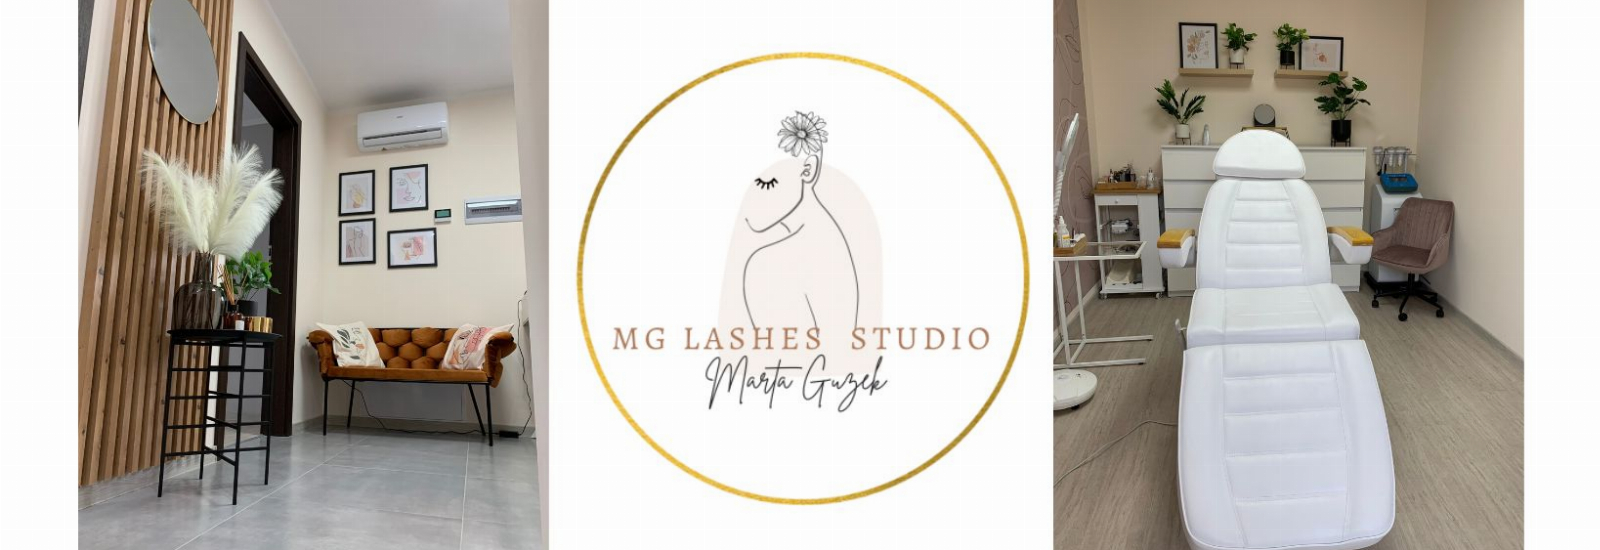 MG Lashes Studio Marta Guzek